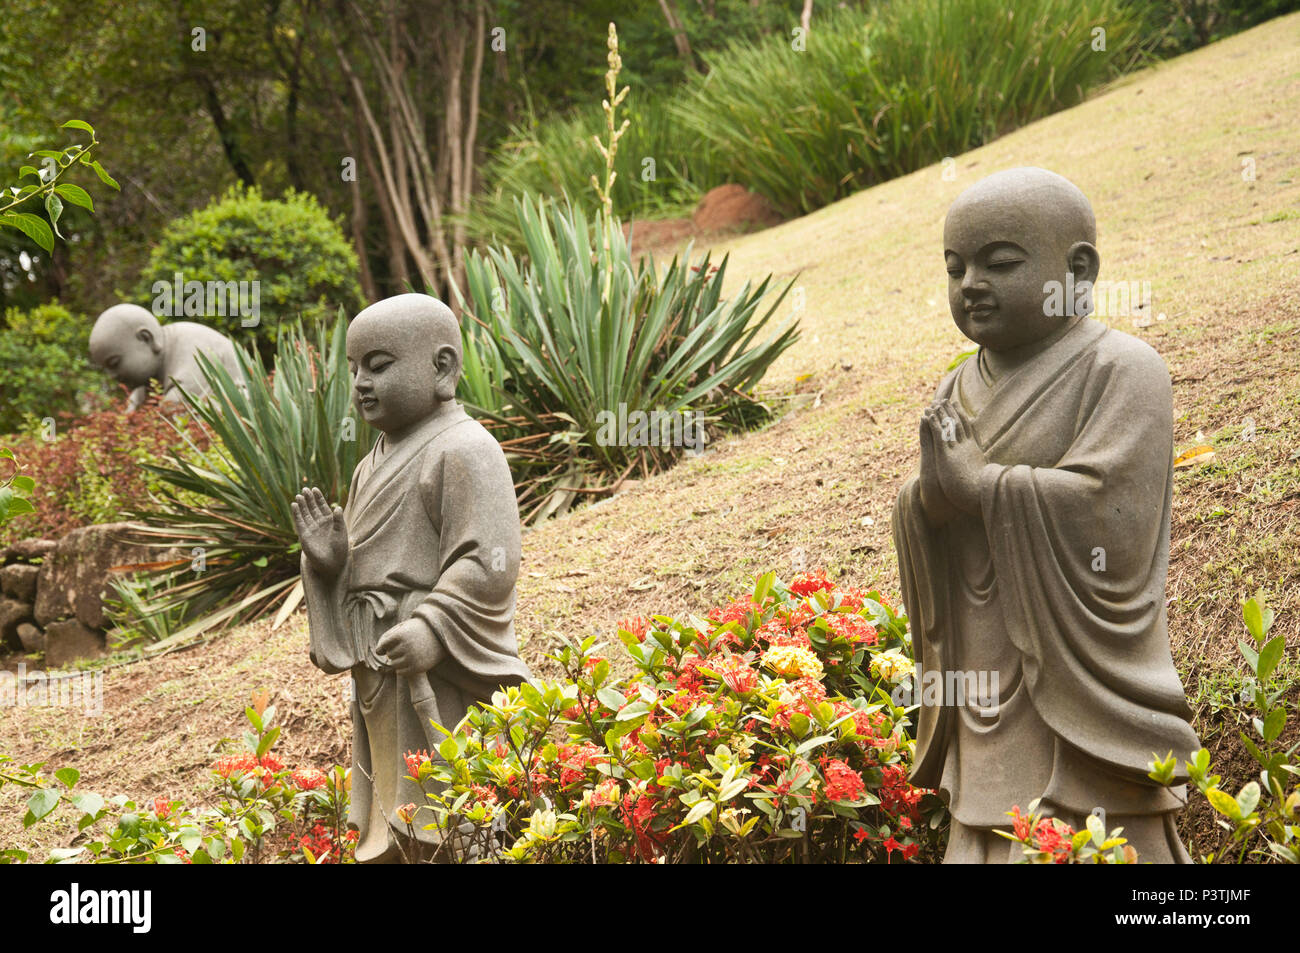 COTIA, SP - 21.02.2016: TEMPLO ZU LAI - Estátuas de BUda crinça no jardim de entrada do templo budista Zu Lai. (Foto: Daniela Maria / Fotoarena) Stock Photo